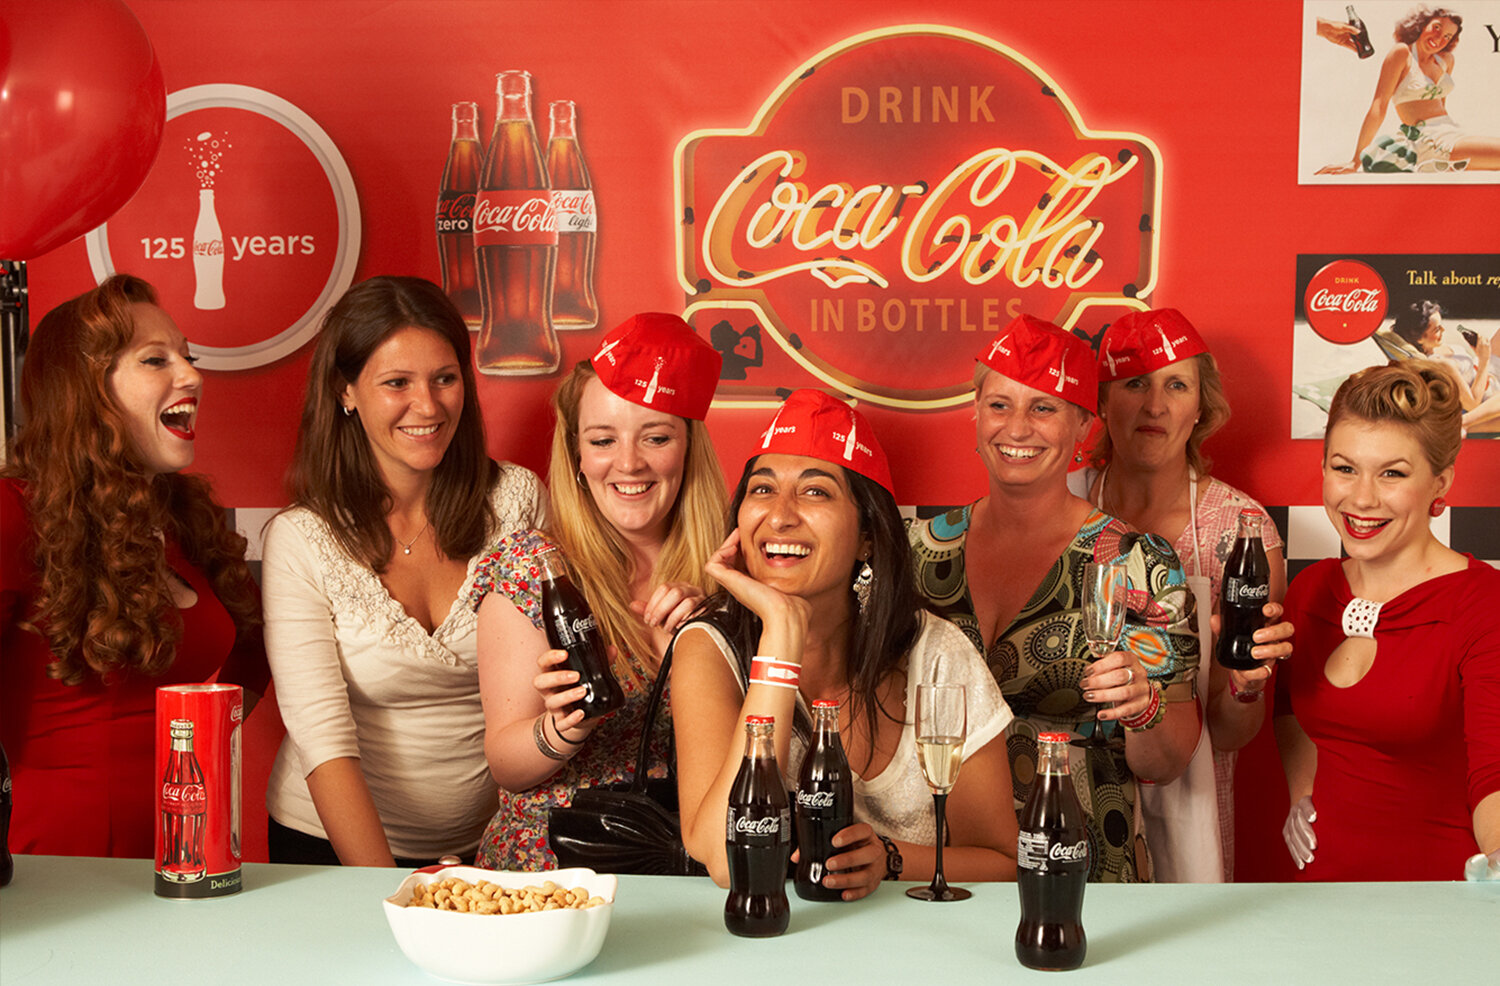 McDonald's celebrates Coca-Cola's 125 years with retro campaign